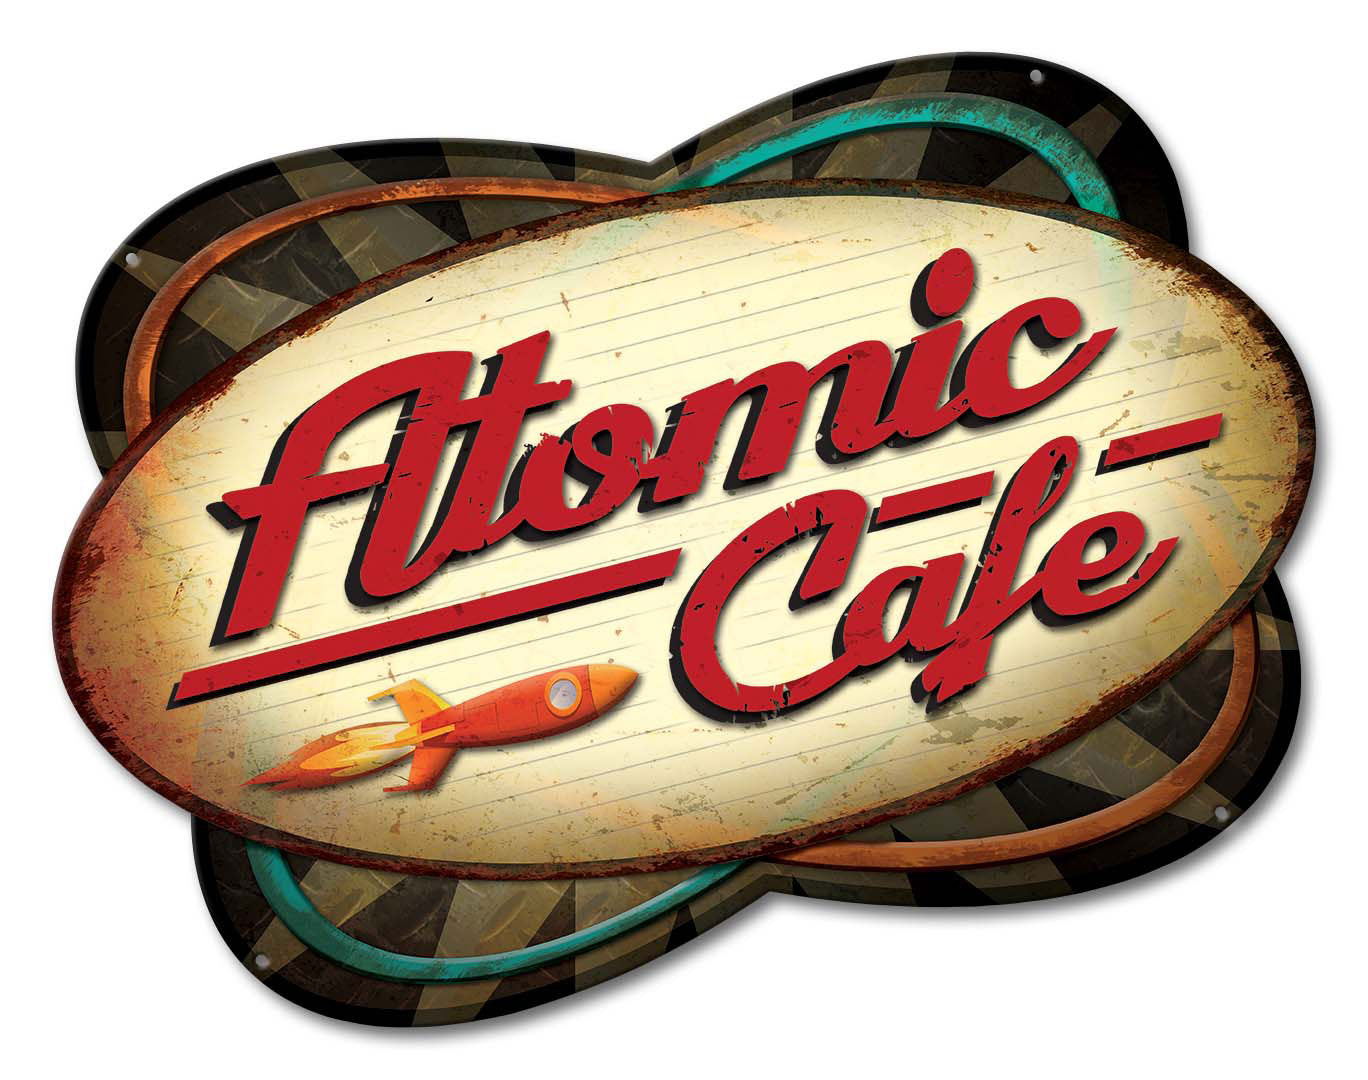 Atomic Cafe Vintage Sign